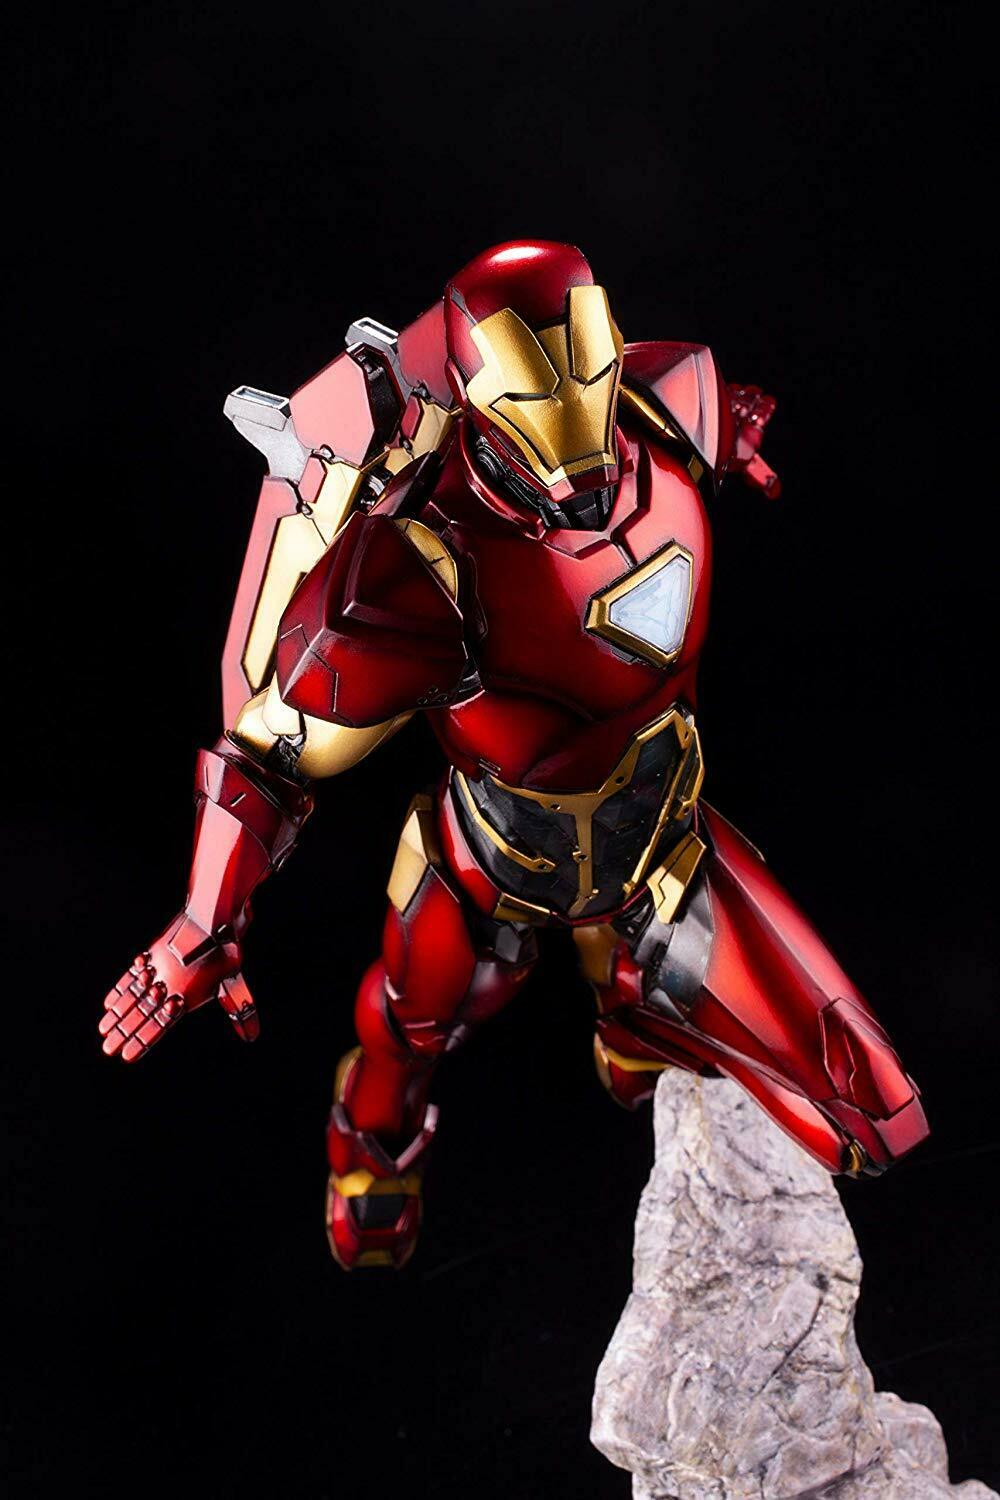 *NEW* Marvel: Iron Man (Limited Edition) ArtFX Premier Statue by Kotobukiya